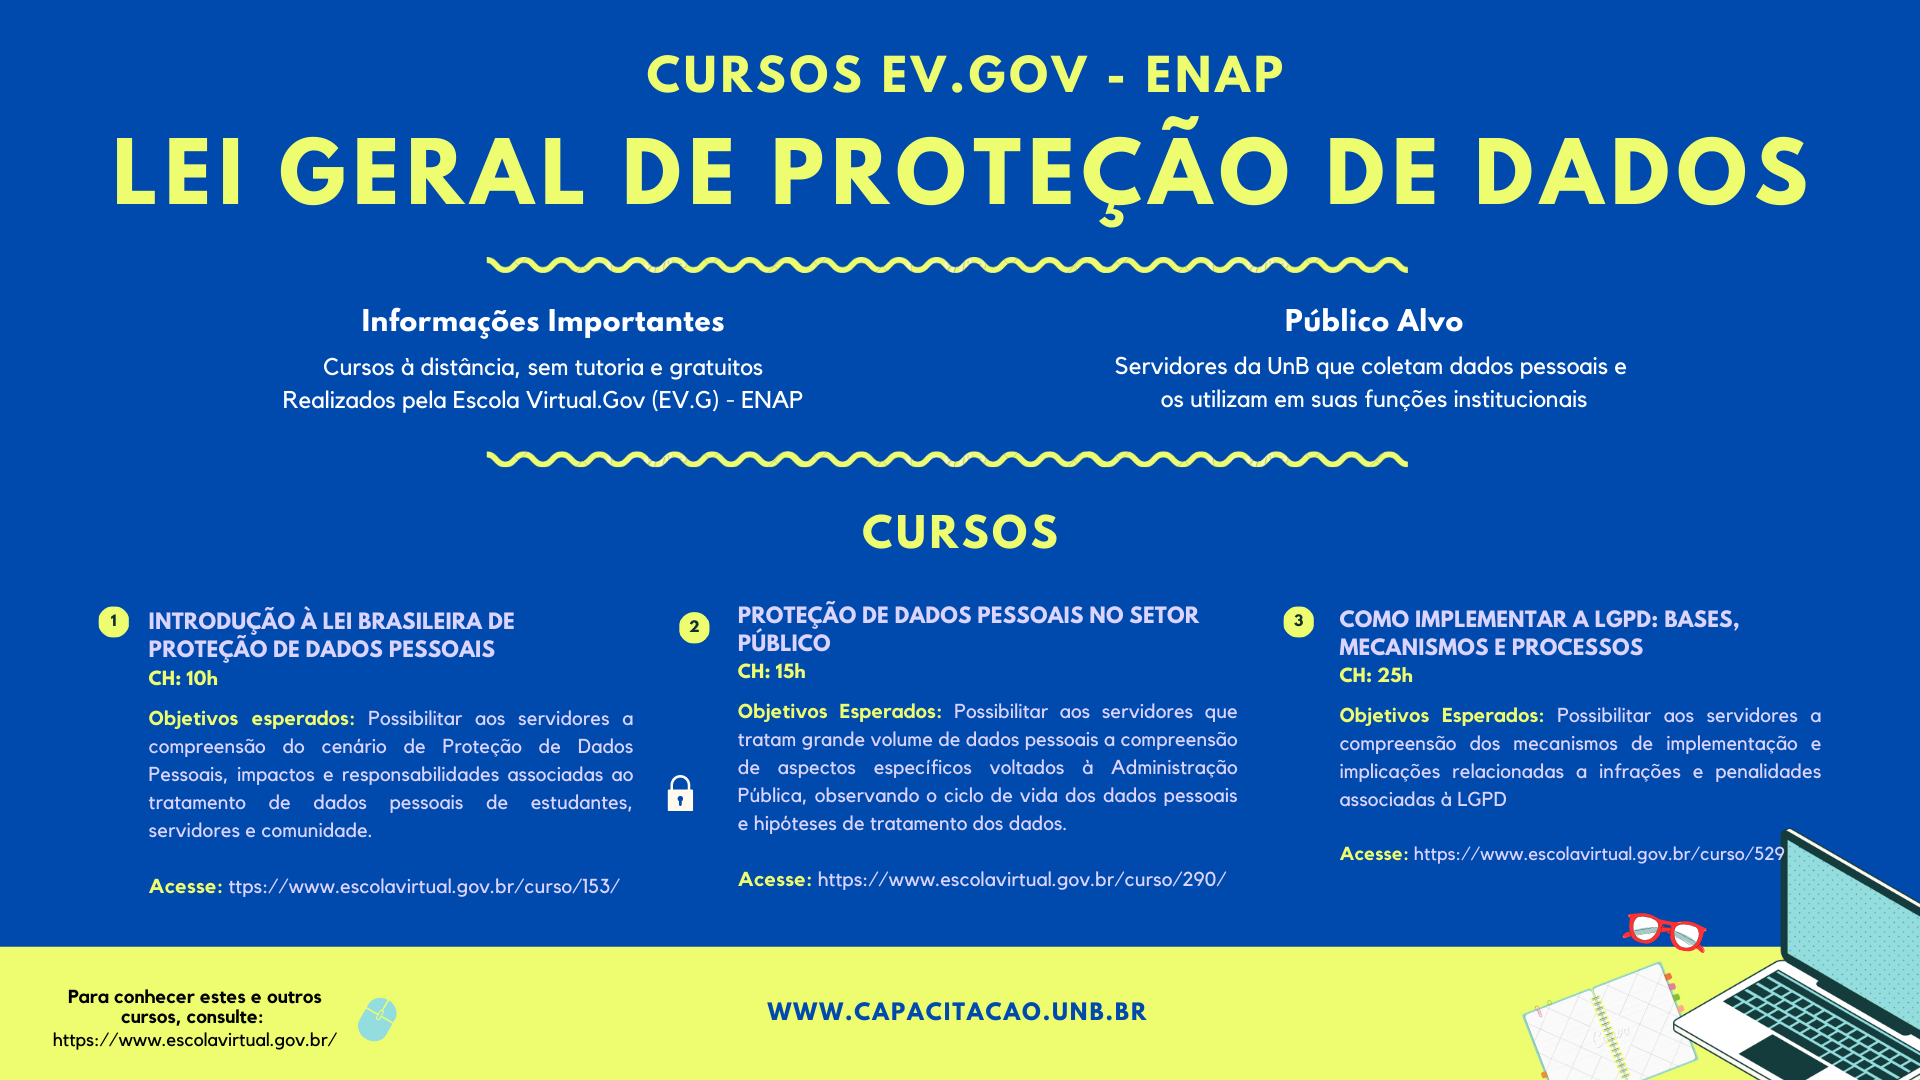 Cursos da EV.Gov/ENAP sobre Lei Geral de Proteção de Dados Pessoais (LGPD)